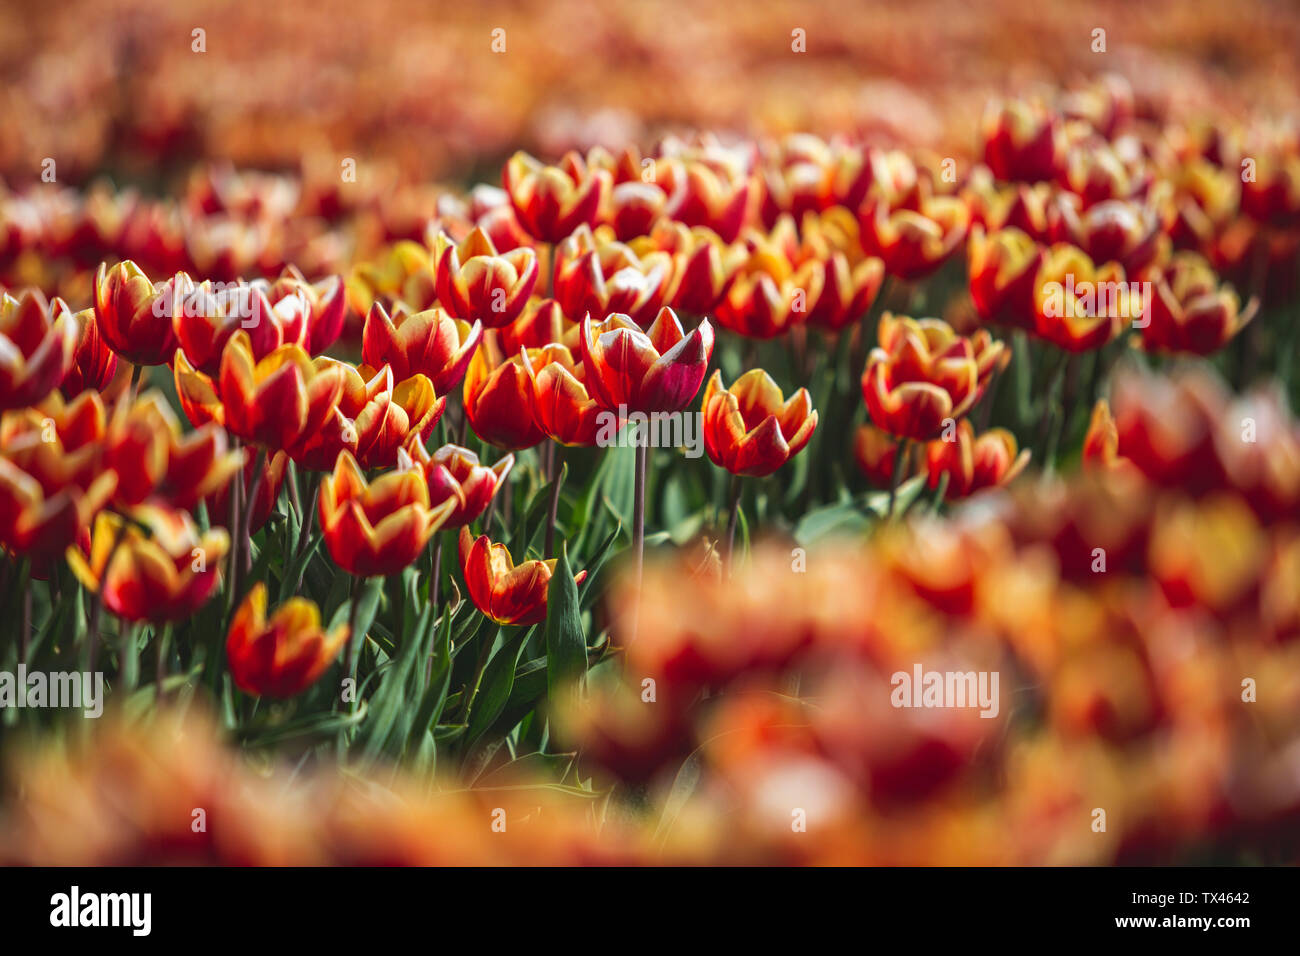 Germany, tulip field Stock Photo